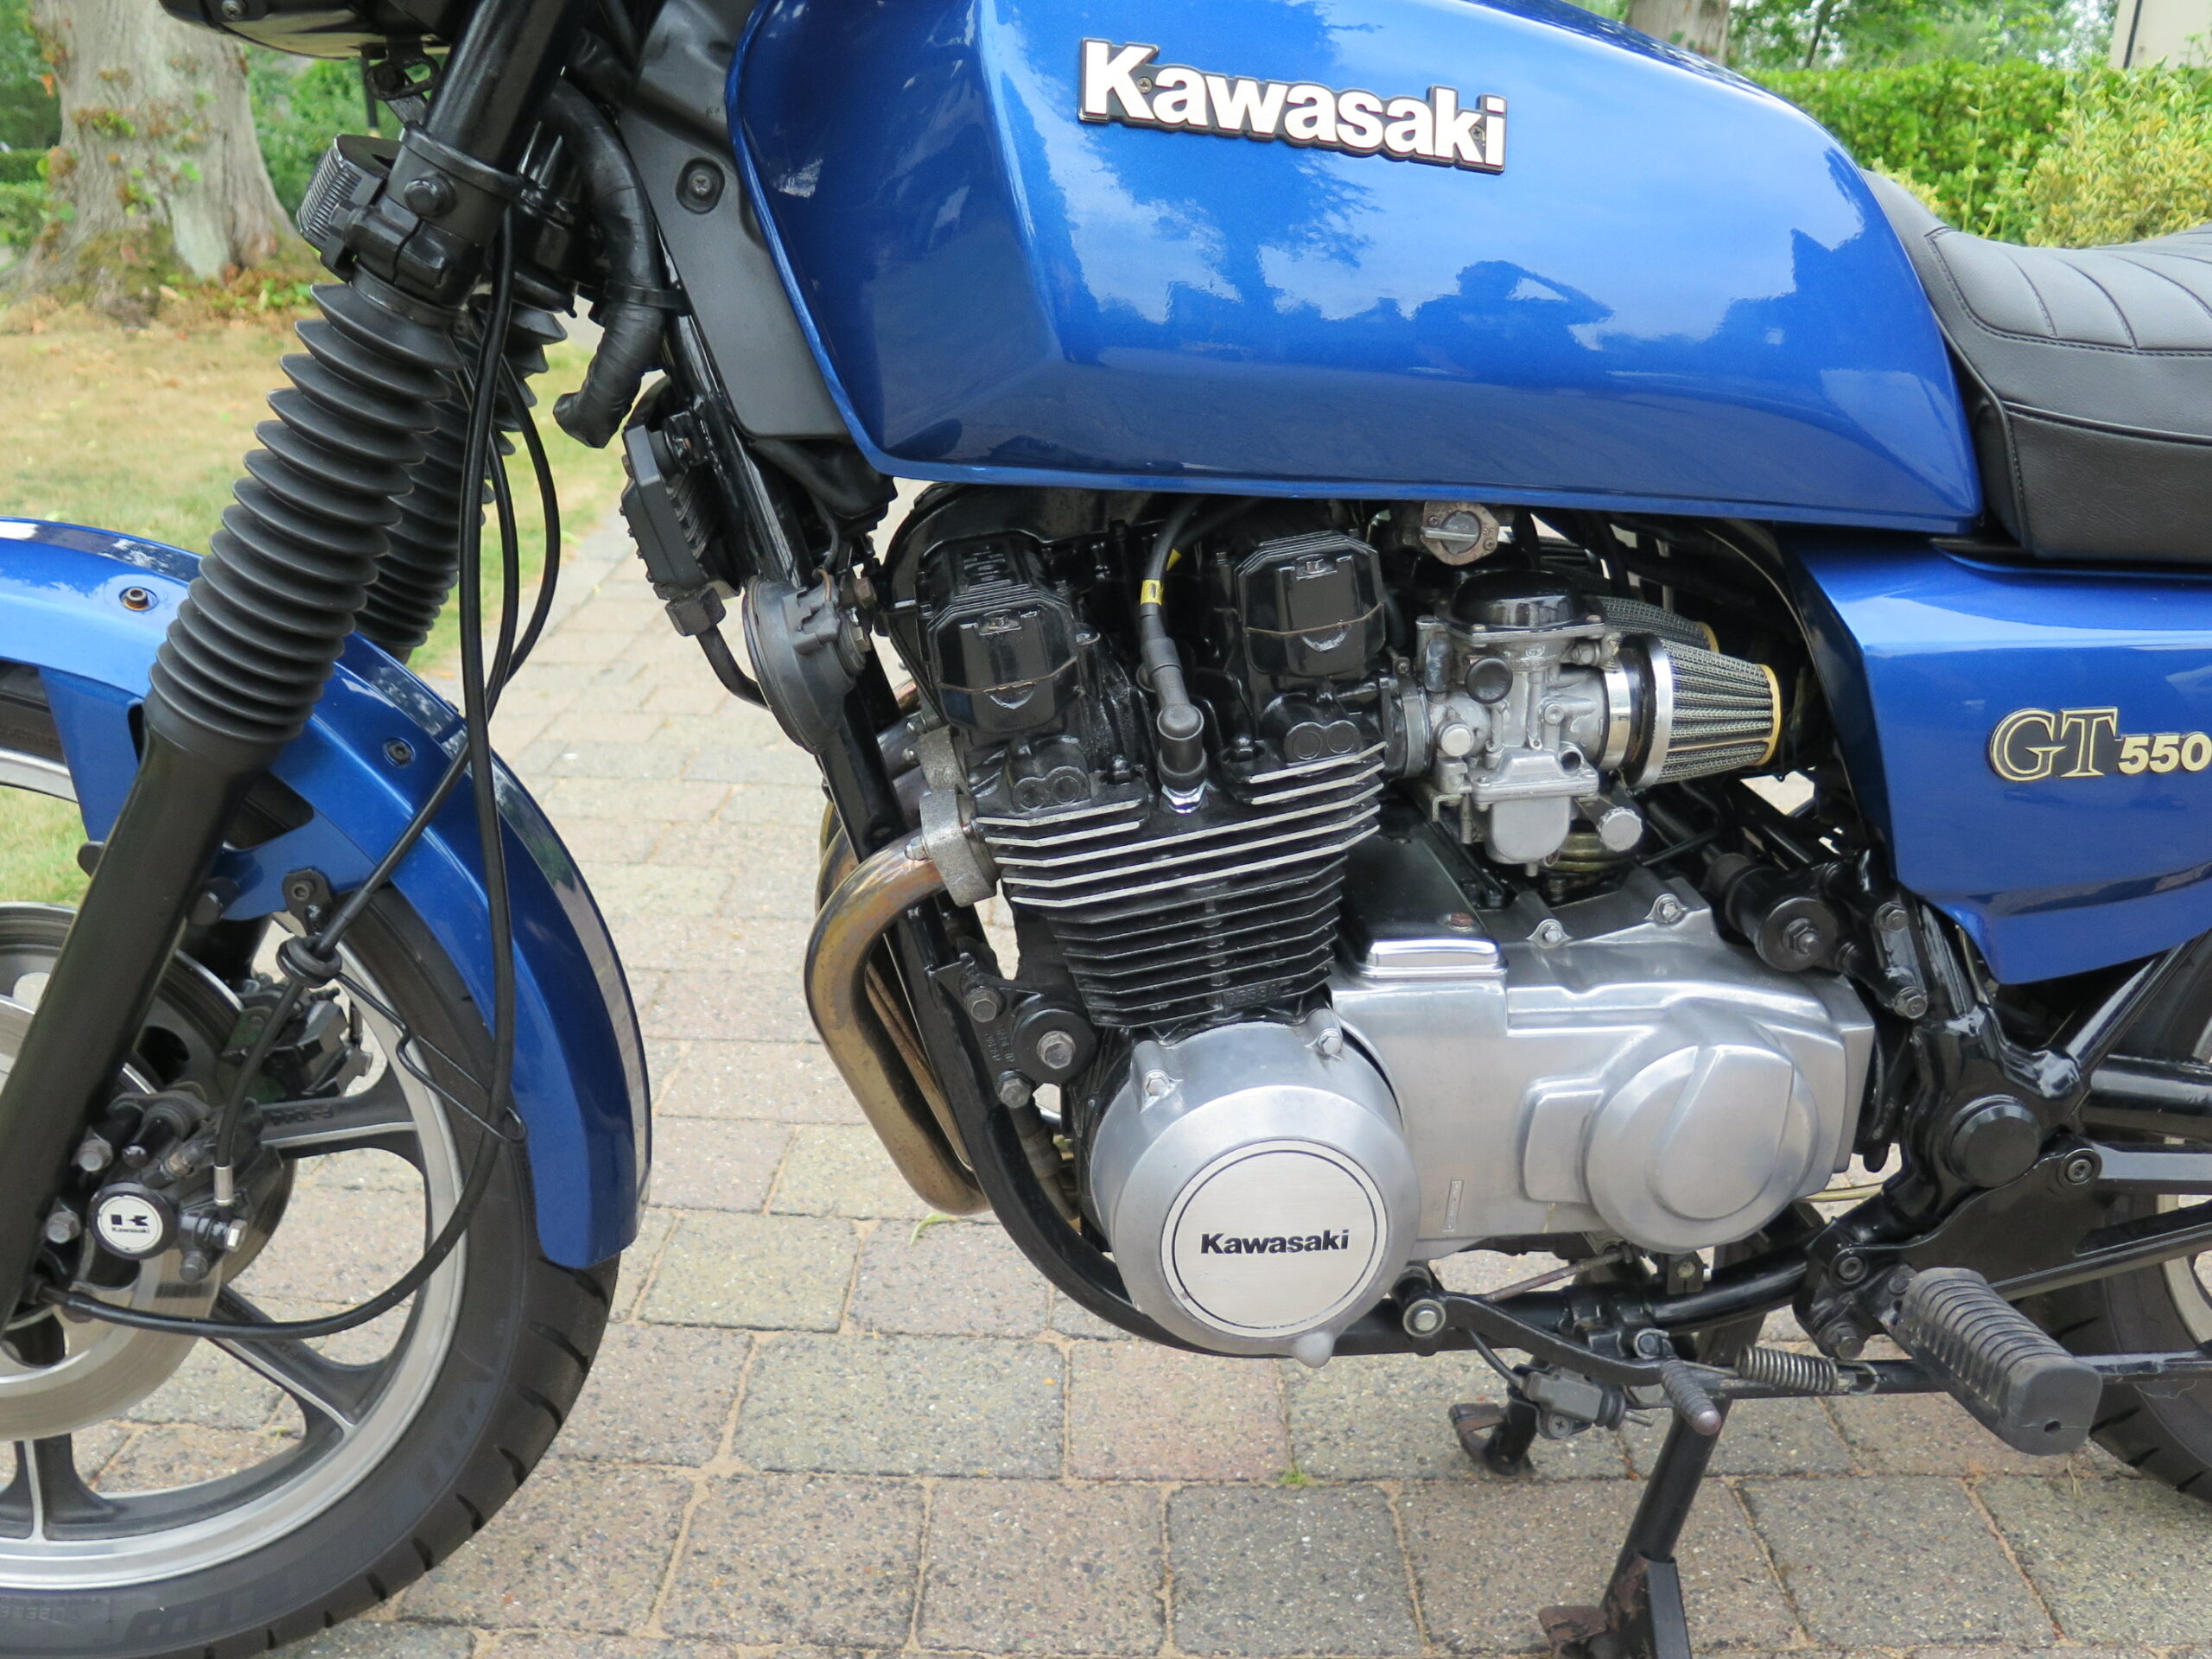 1986 Kawasaki GT G3) – Charterhouse Auction